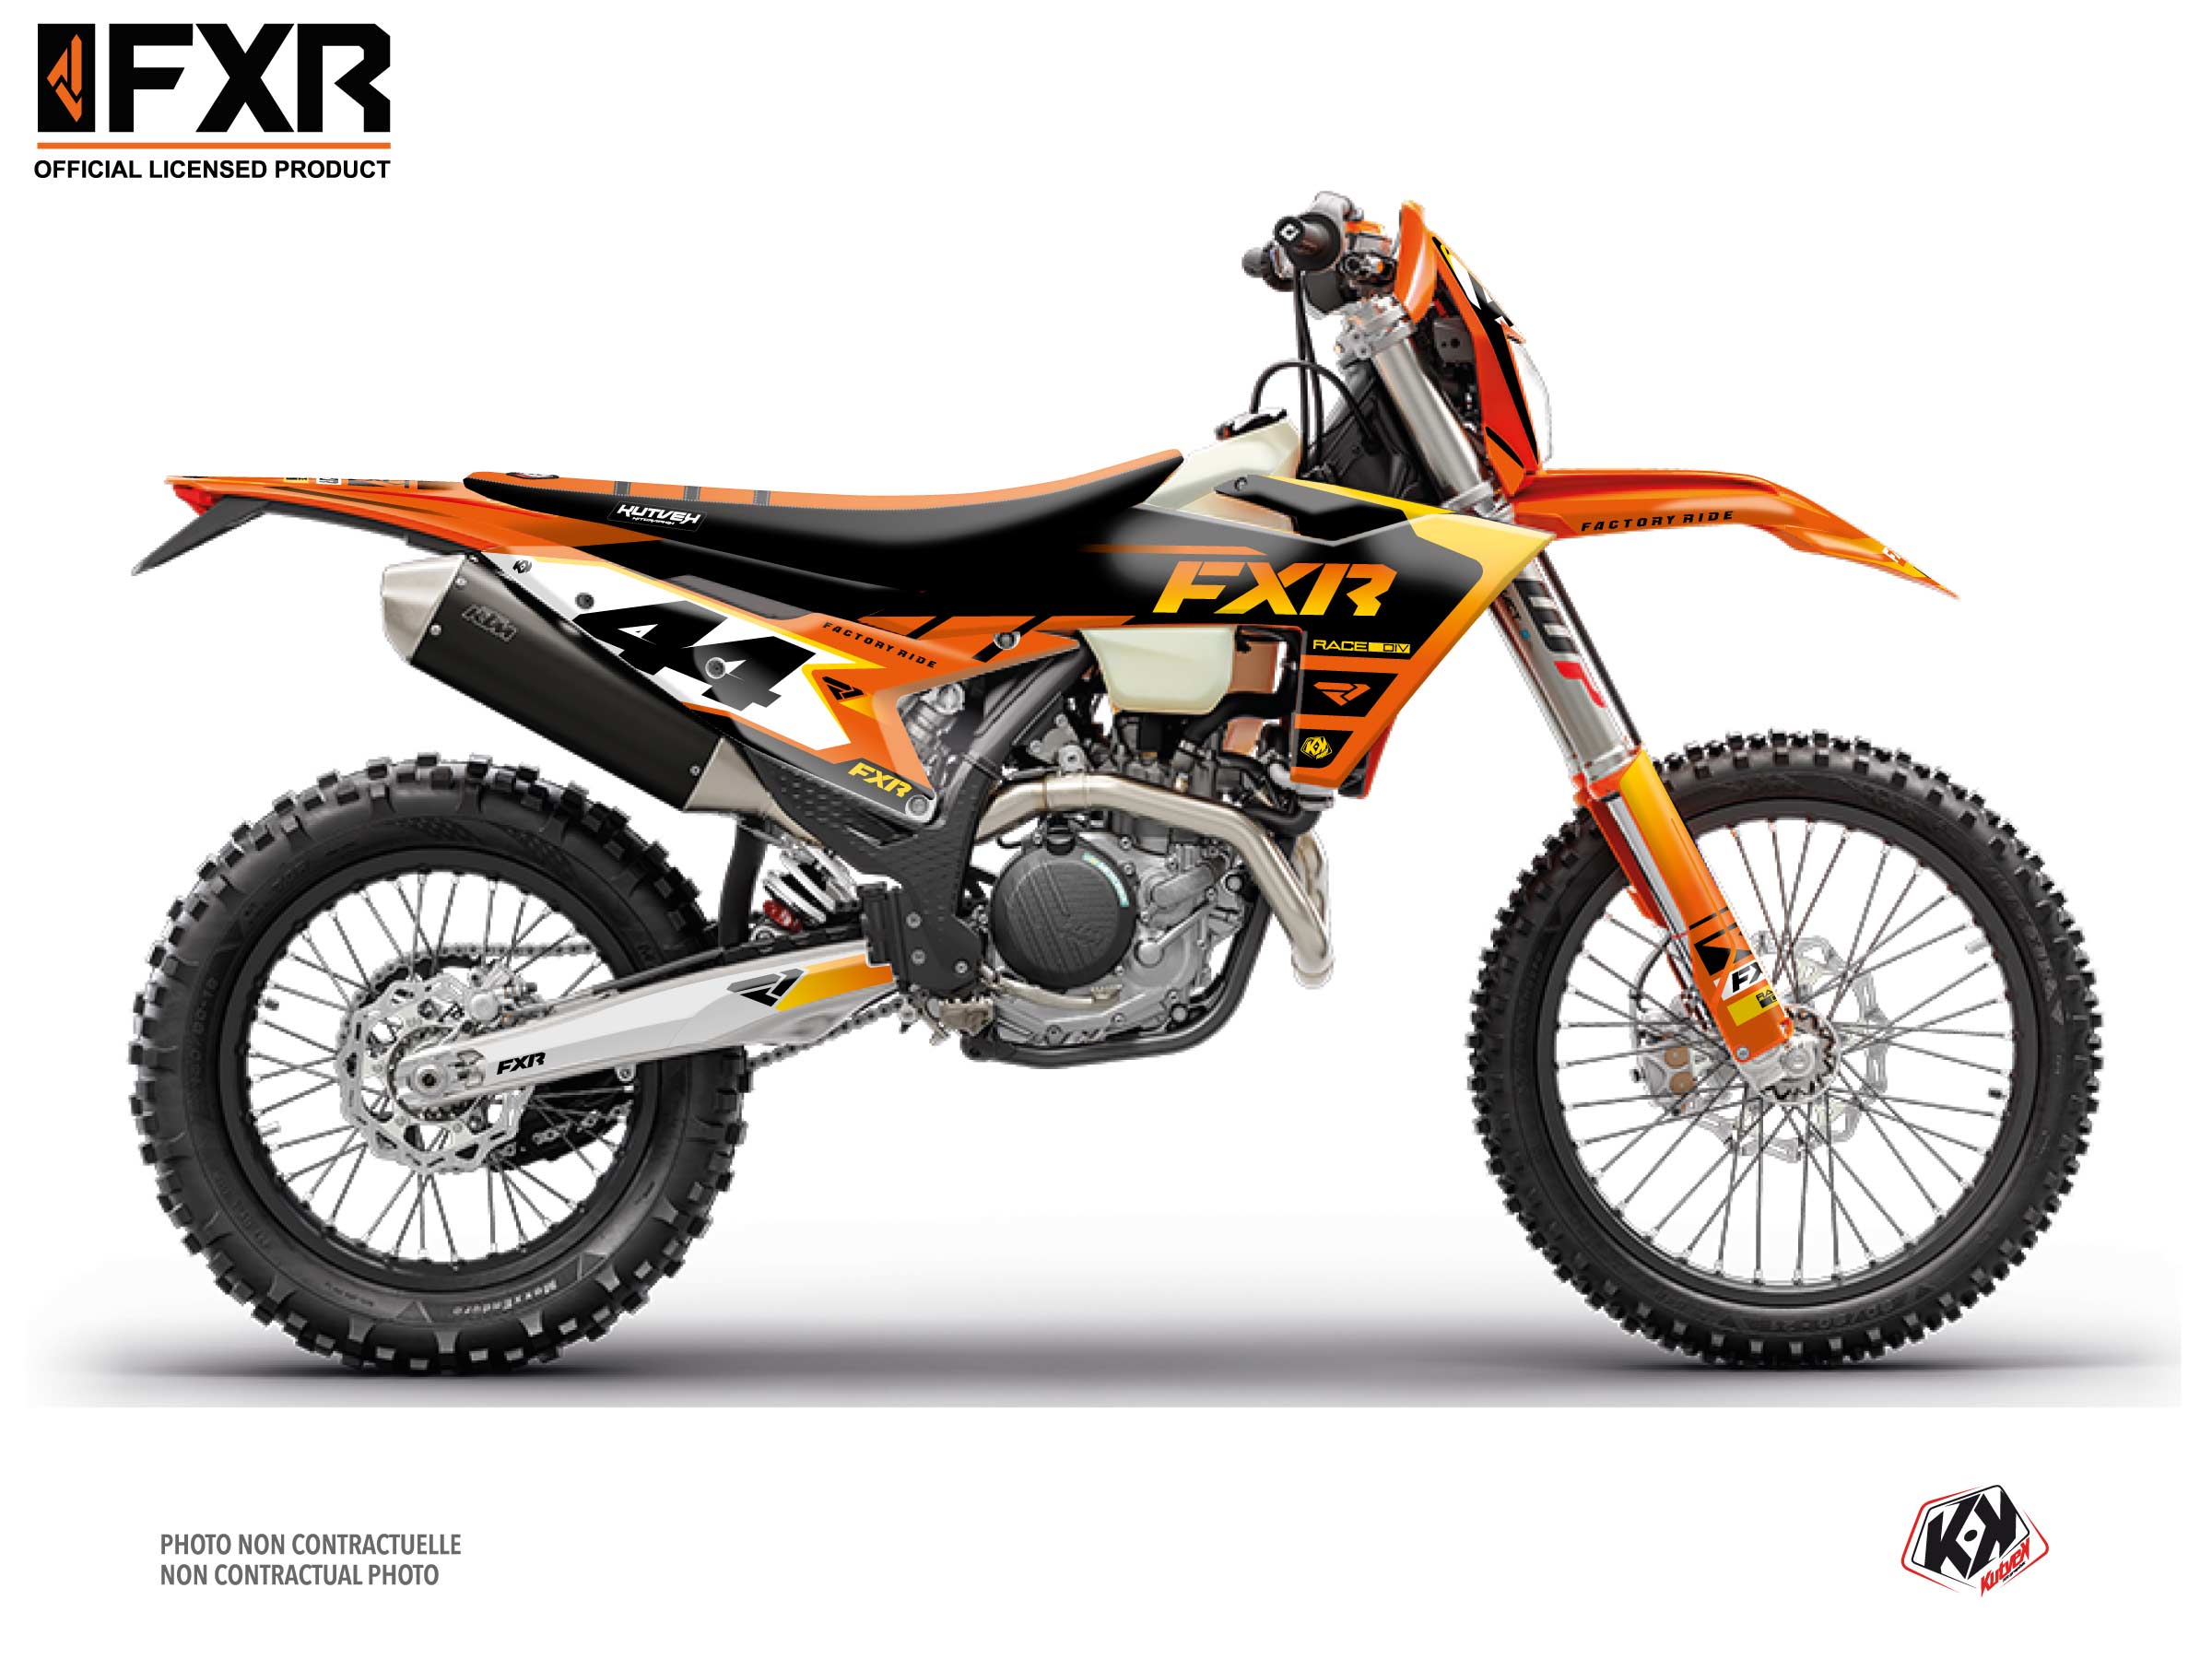 Kit Déco Motocross Fxr Revo Ktm Exc Excf Orange